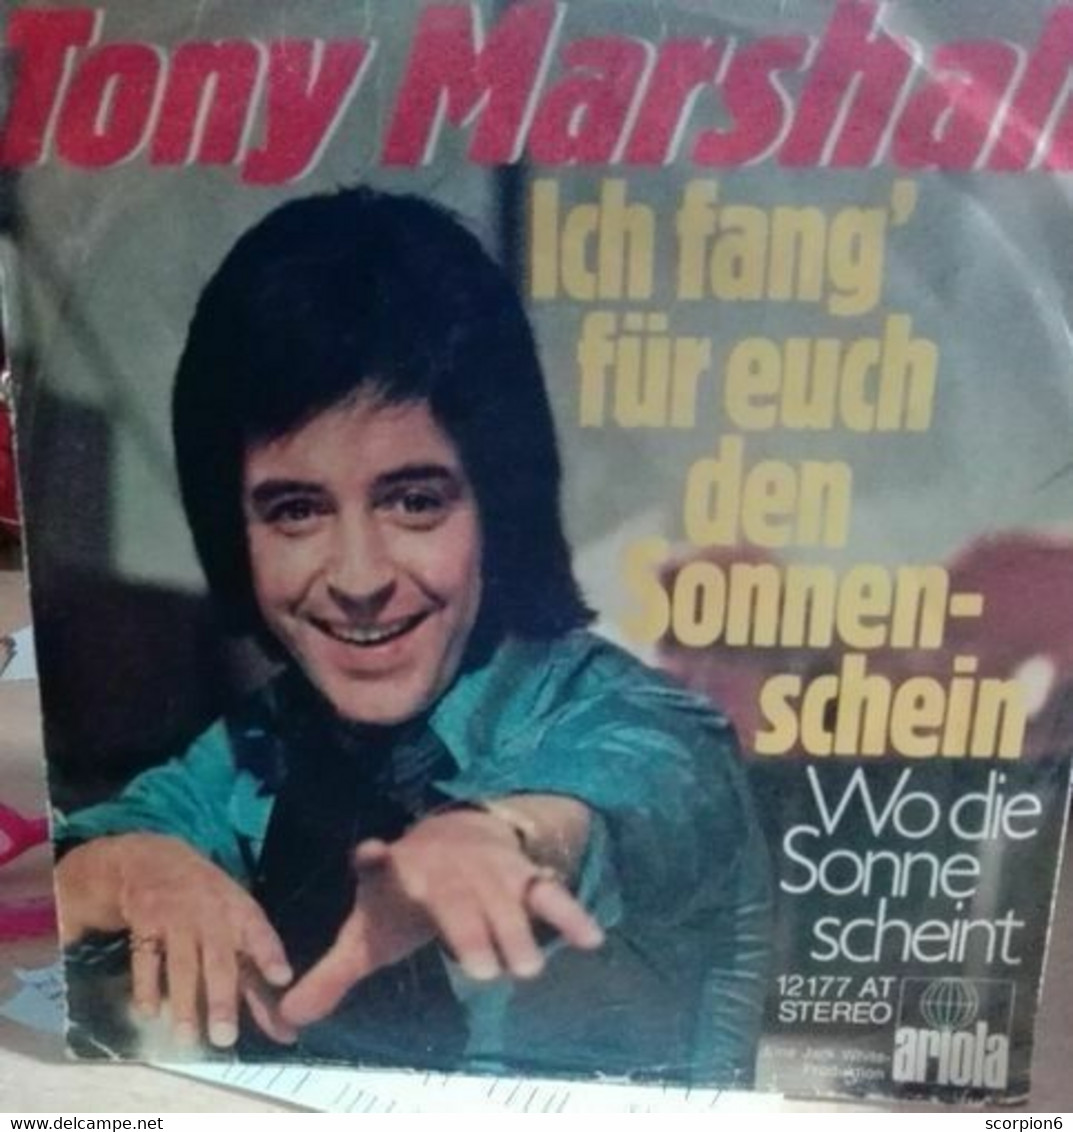 7" Single - Tony Marshall - Ich Fang' Für Euch Den Sonnenschein - Other - German Music